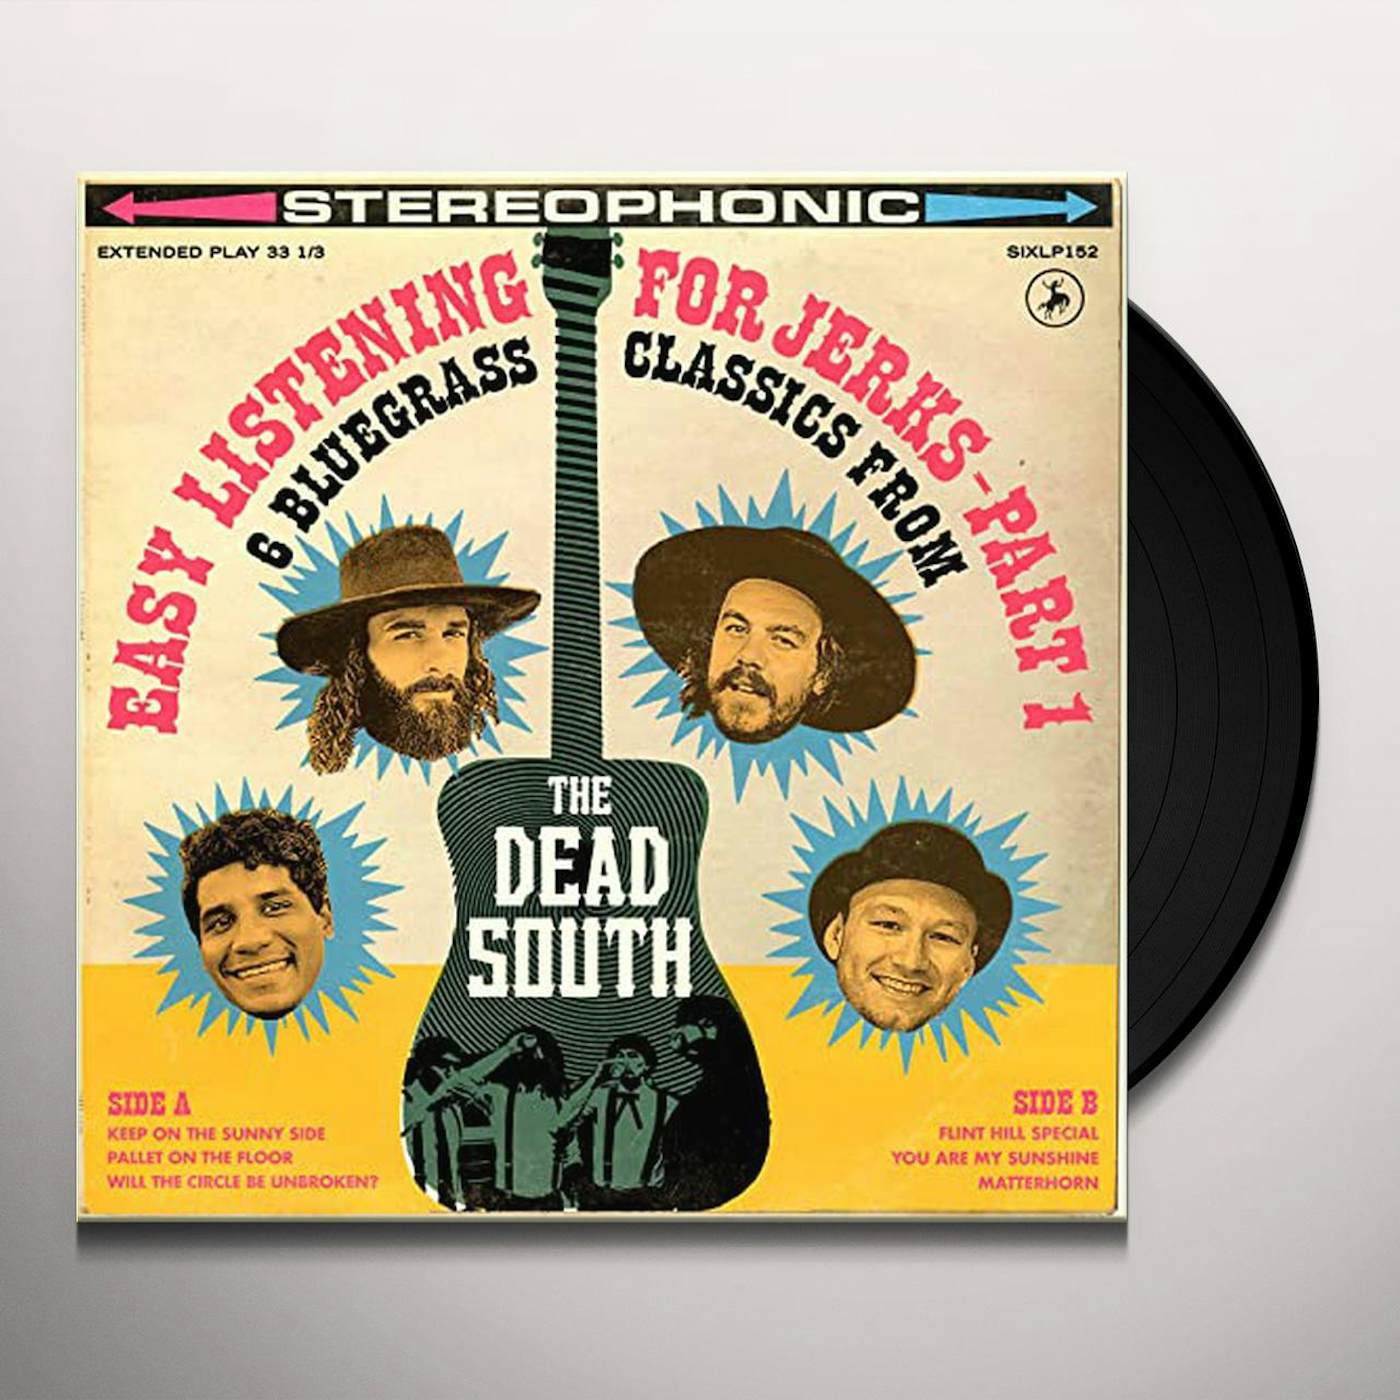 The Dead South EASY LISTENING FOR JERKS PT. 1 Vinyl Record